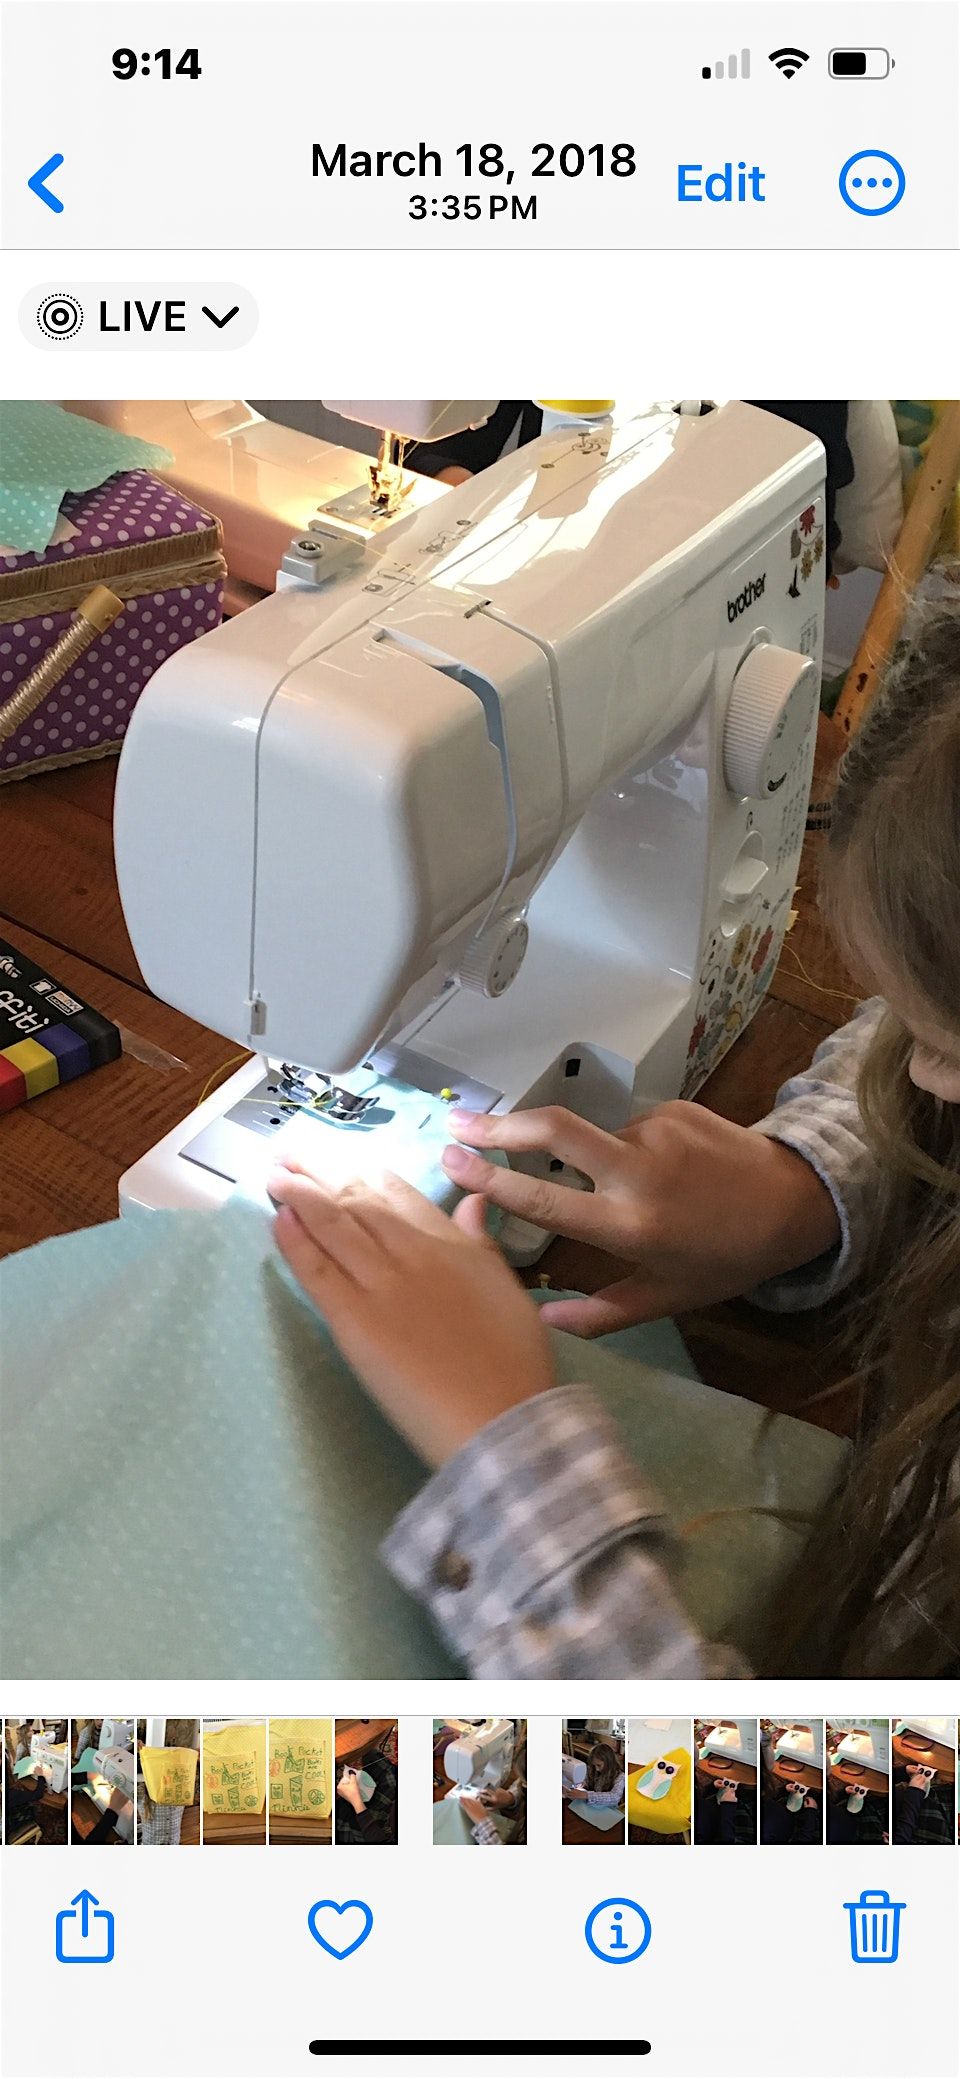 Kids Summer Sewing Class